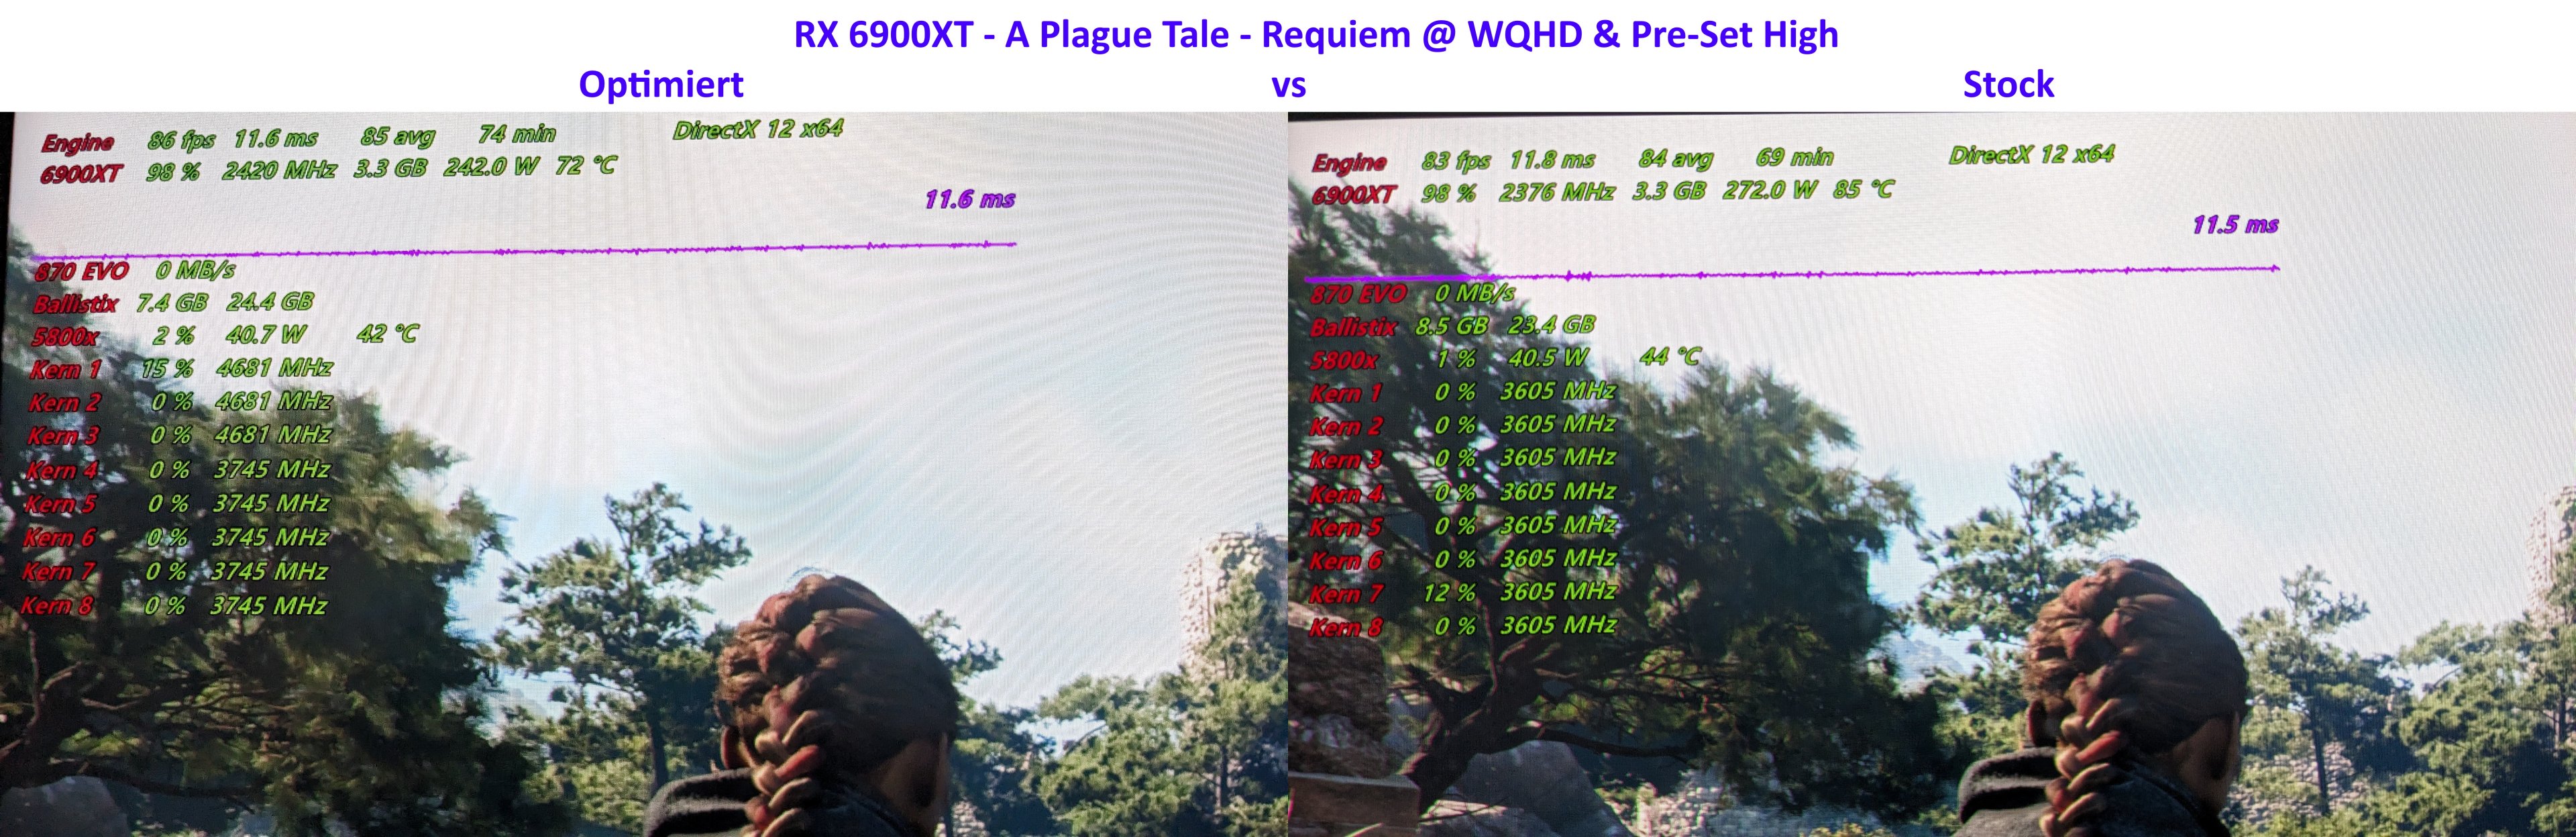 RX 6900XT - A Plague Tale - Requiem.jpg